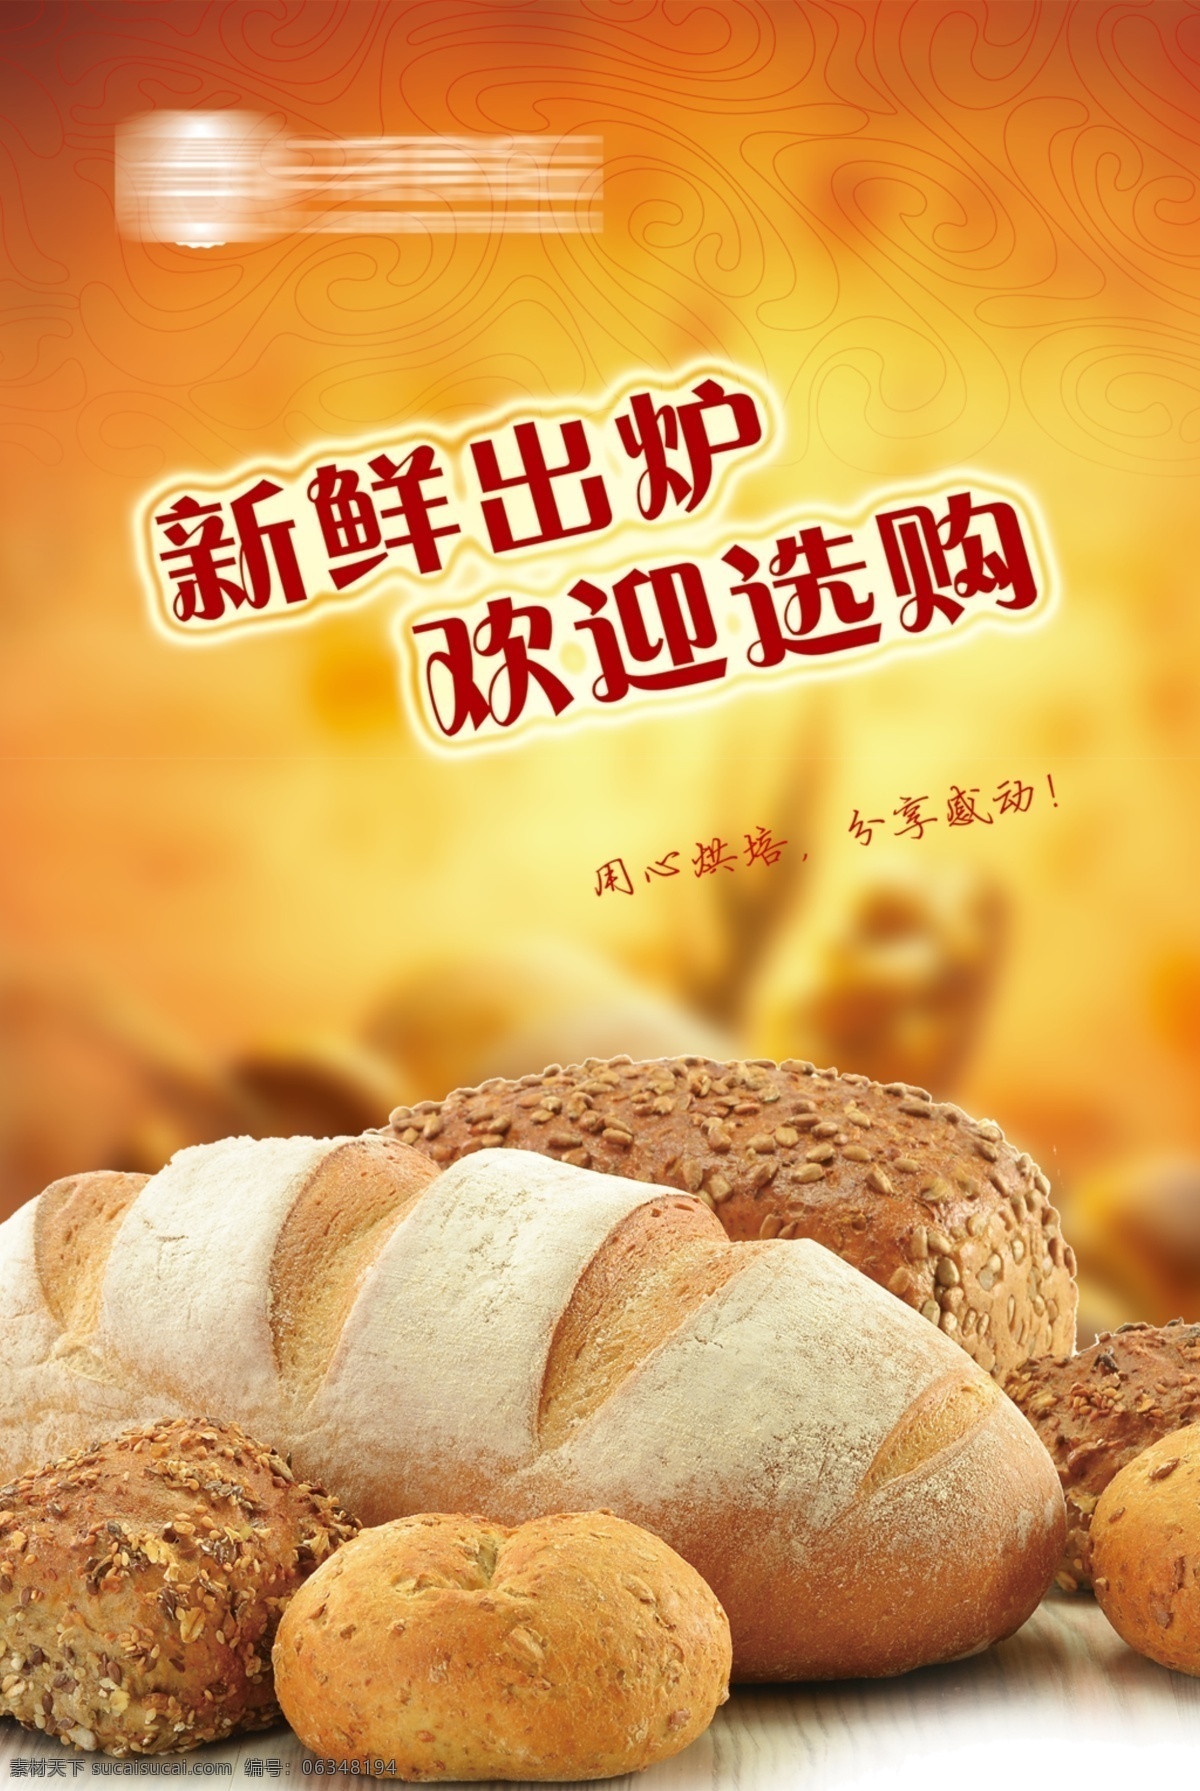 面包 烘焙 广告宣传 海报 面包烘焙广告 宣传海报 橙色